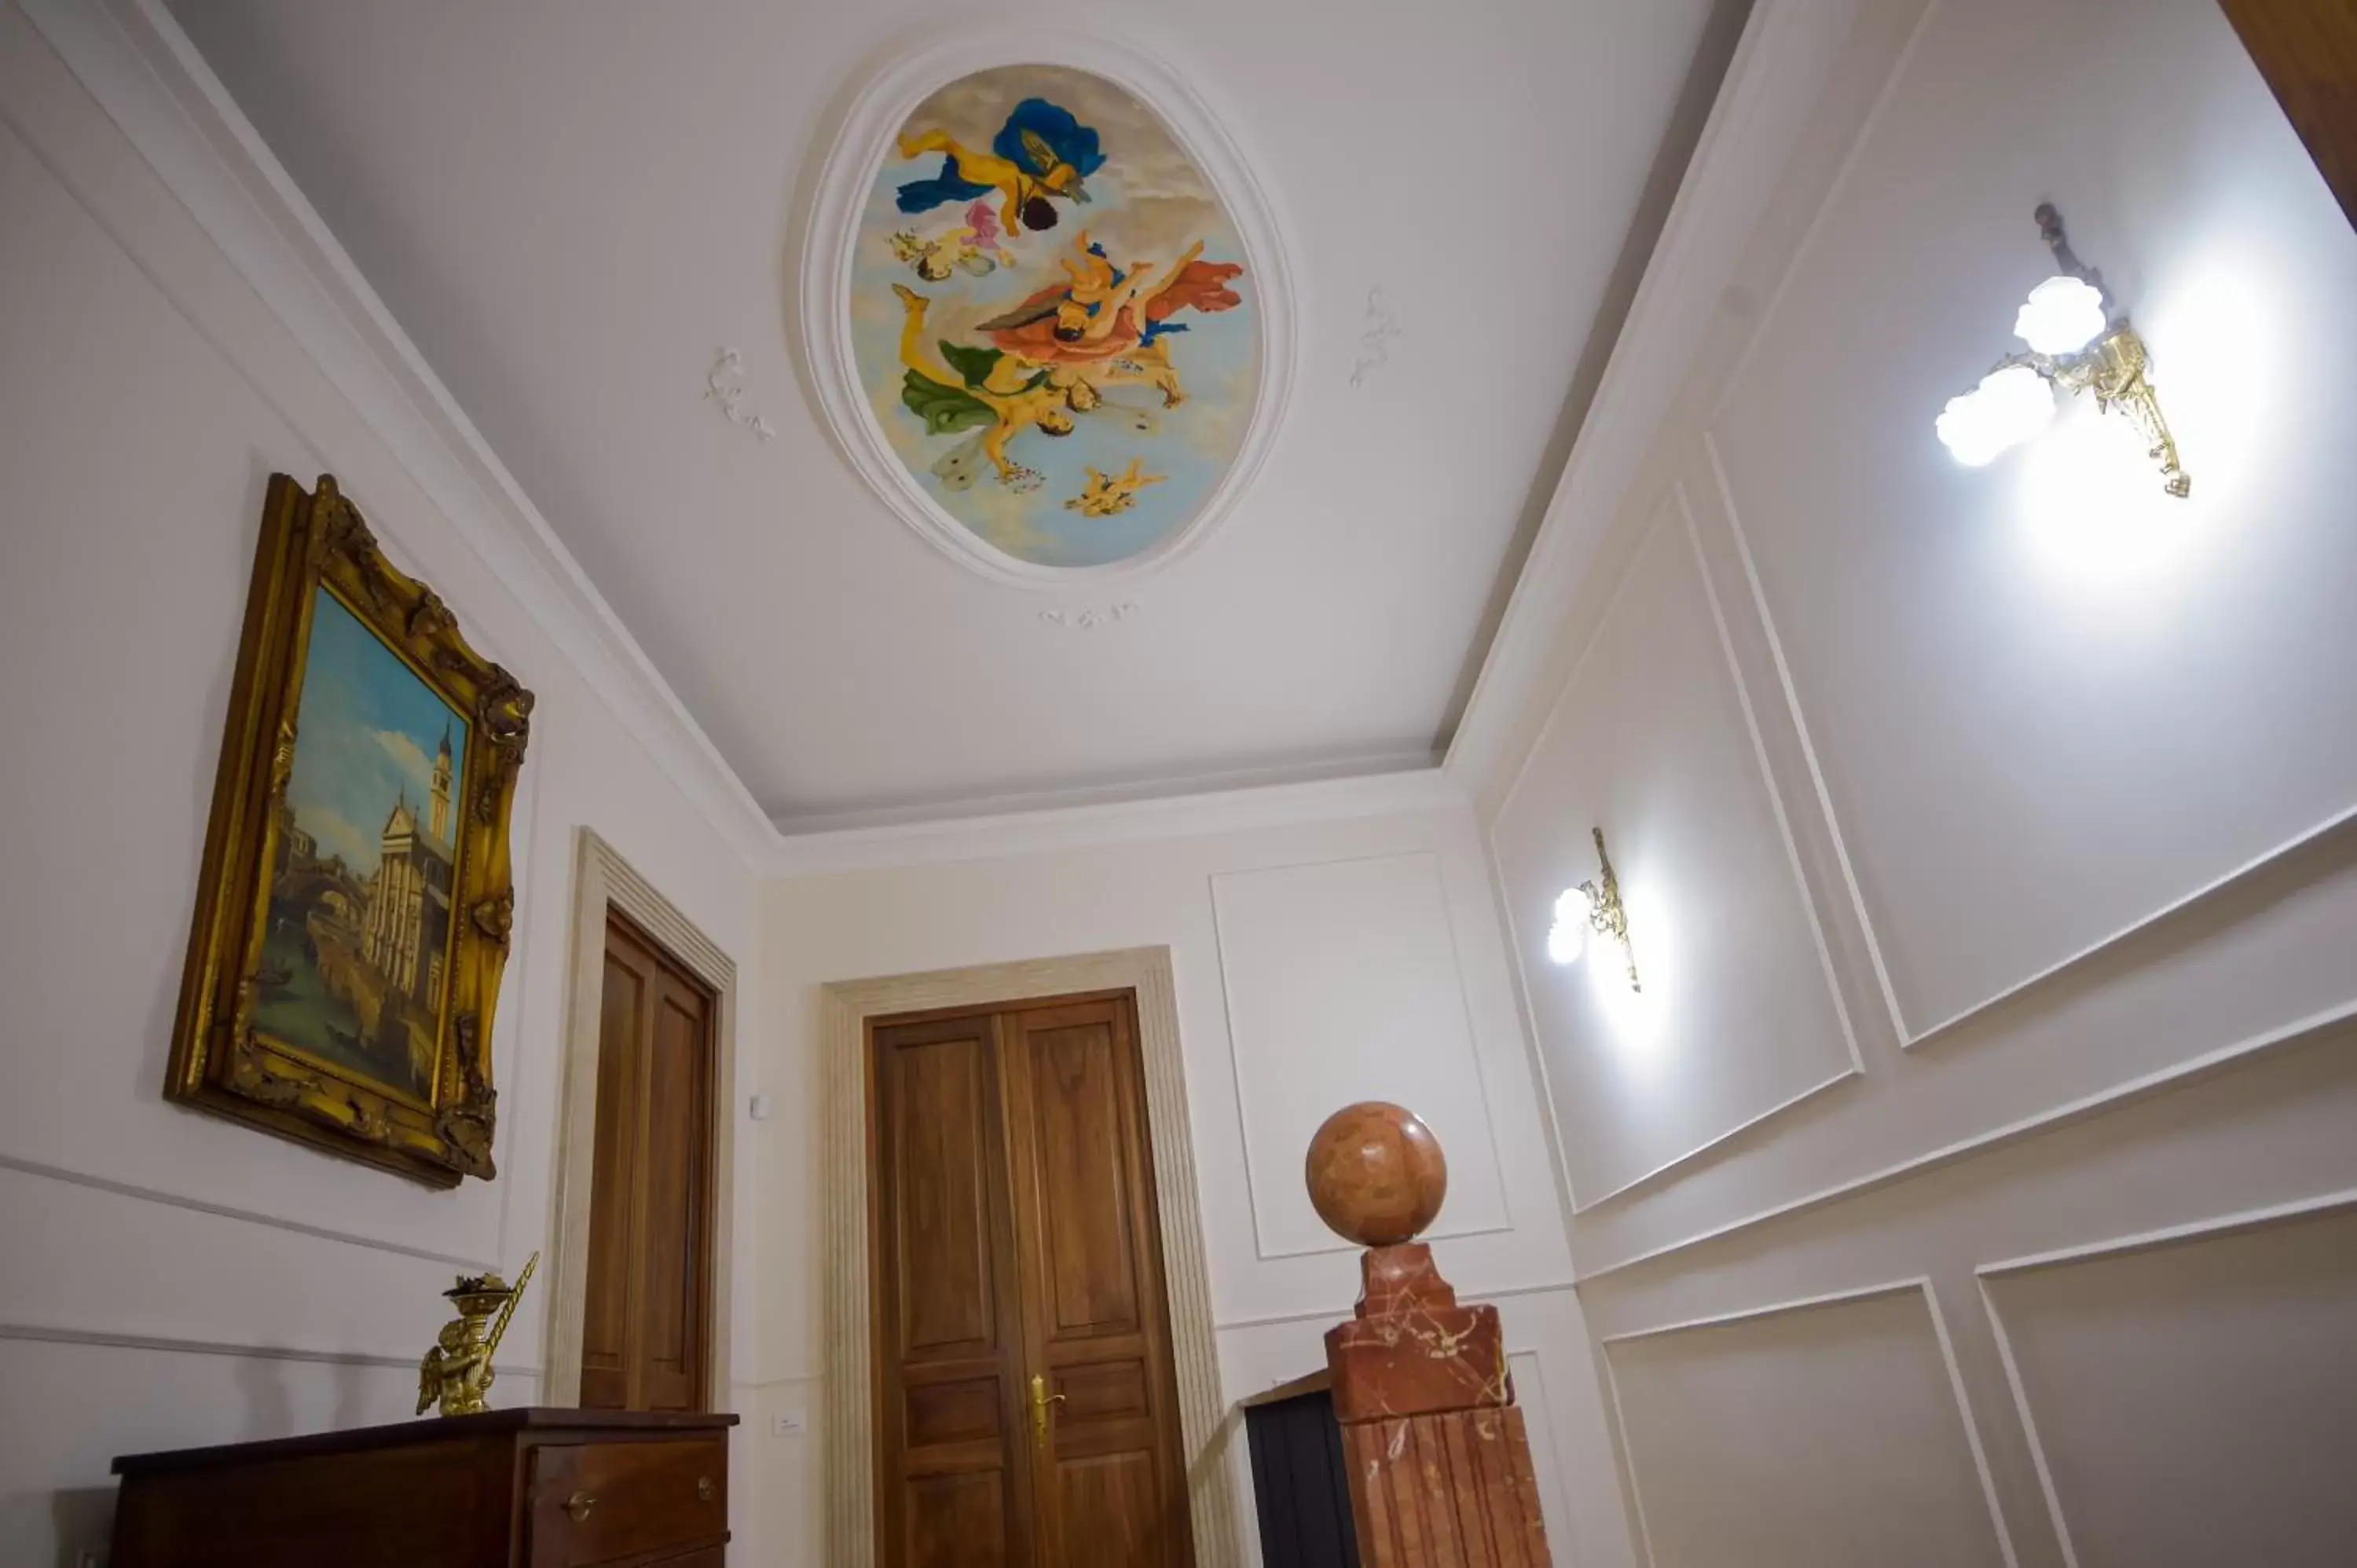 Decorative detail in Palazzo Liguori